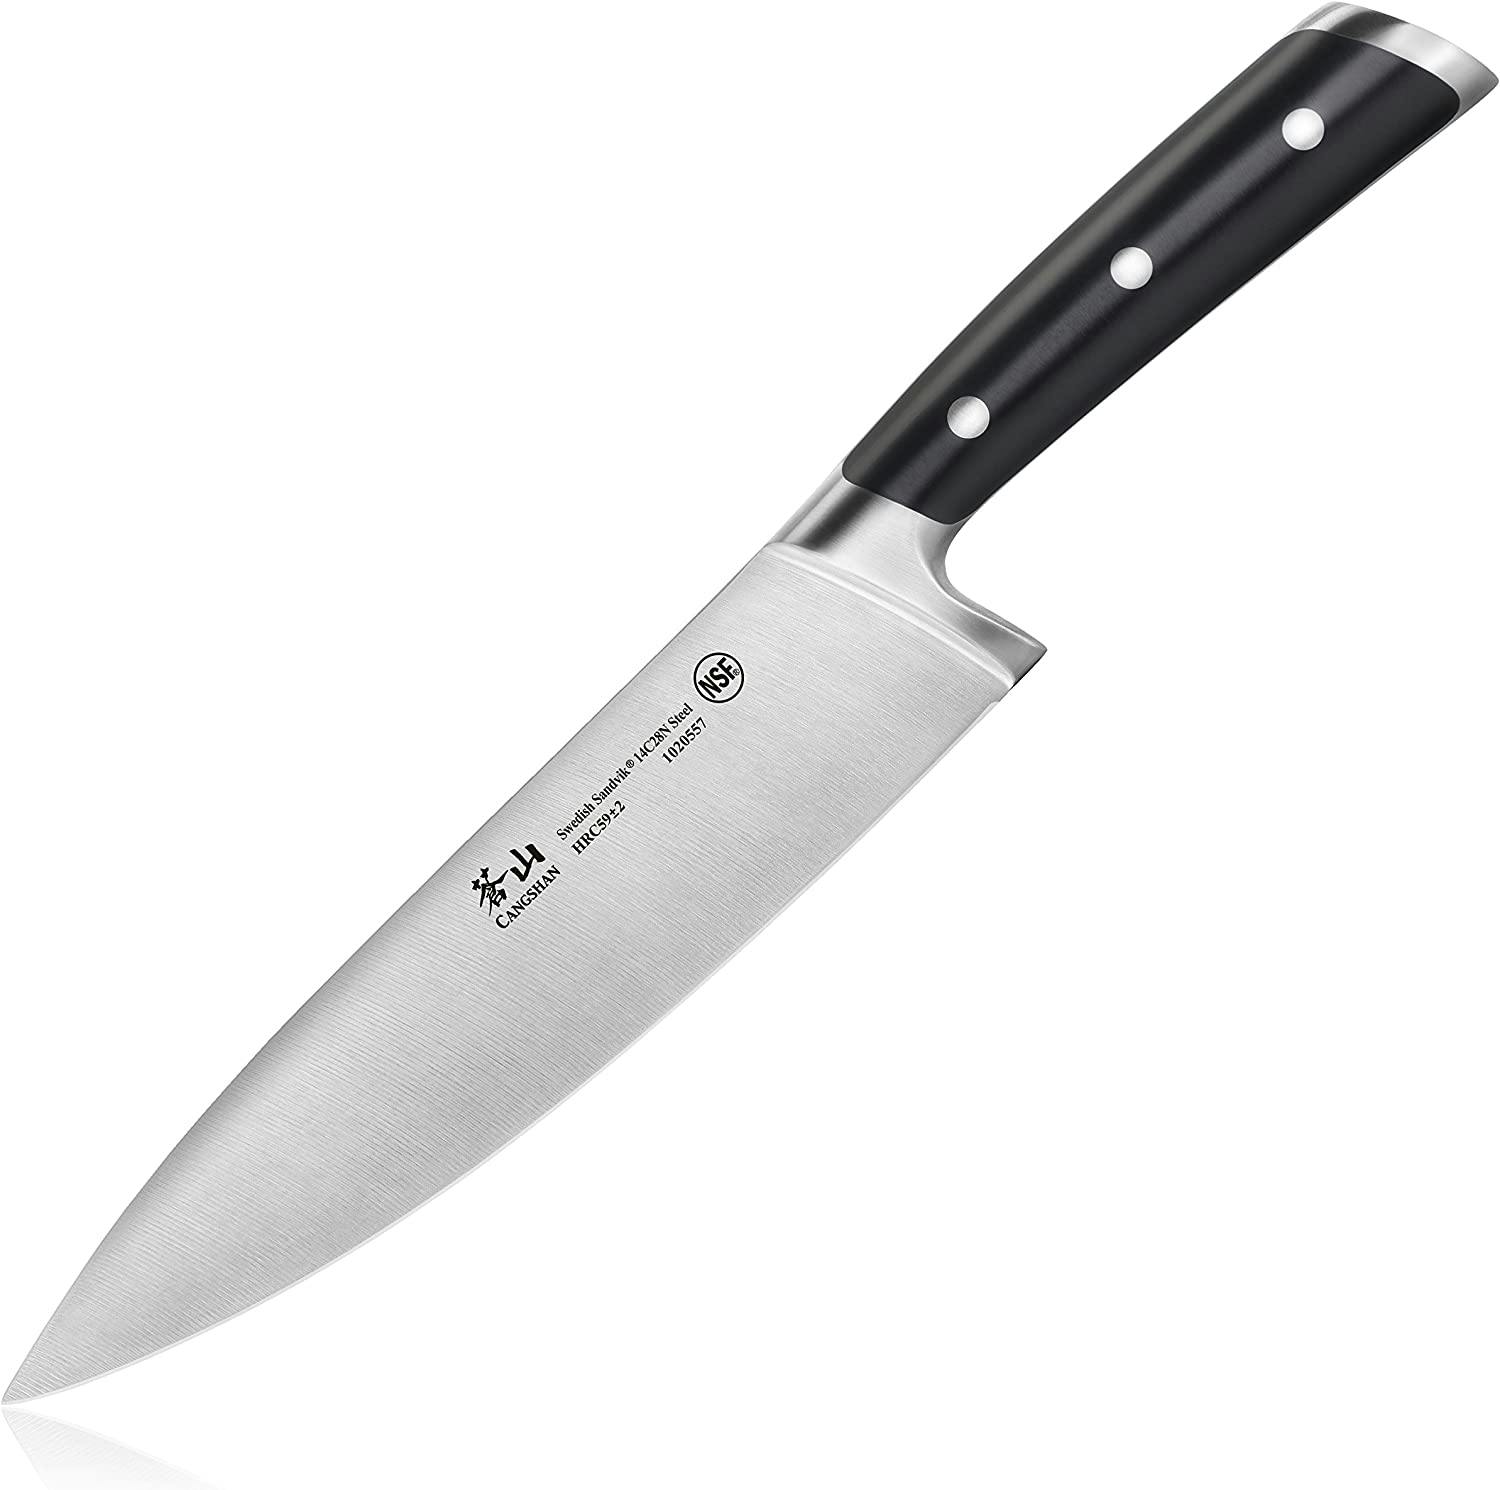 Cangshan TS Series 8" Chef Knife